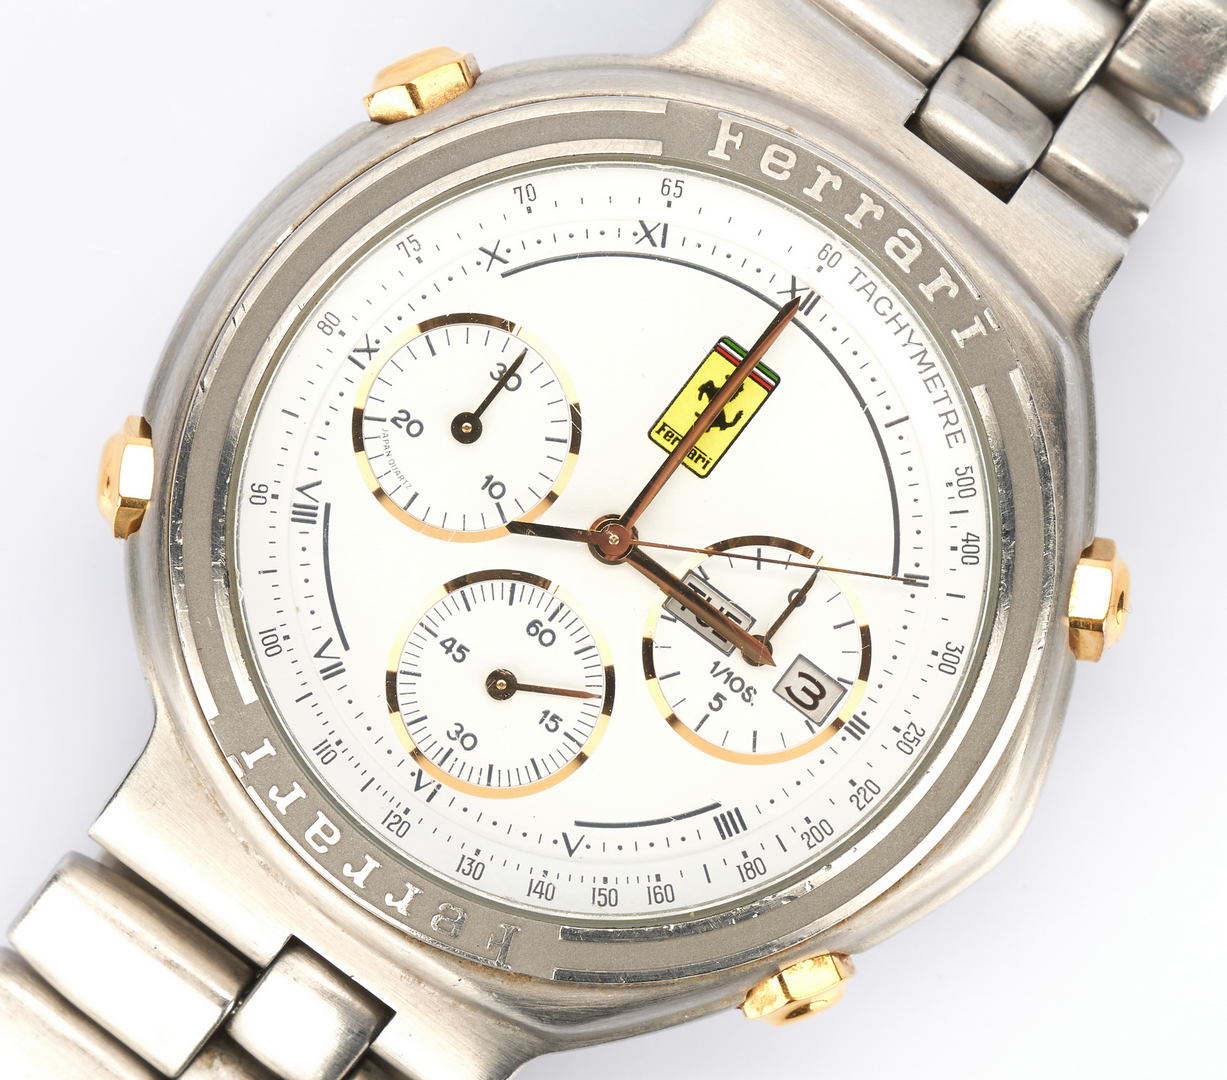 Lot 796: Cartier Ferrari Formula Chronograph Watch